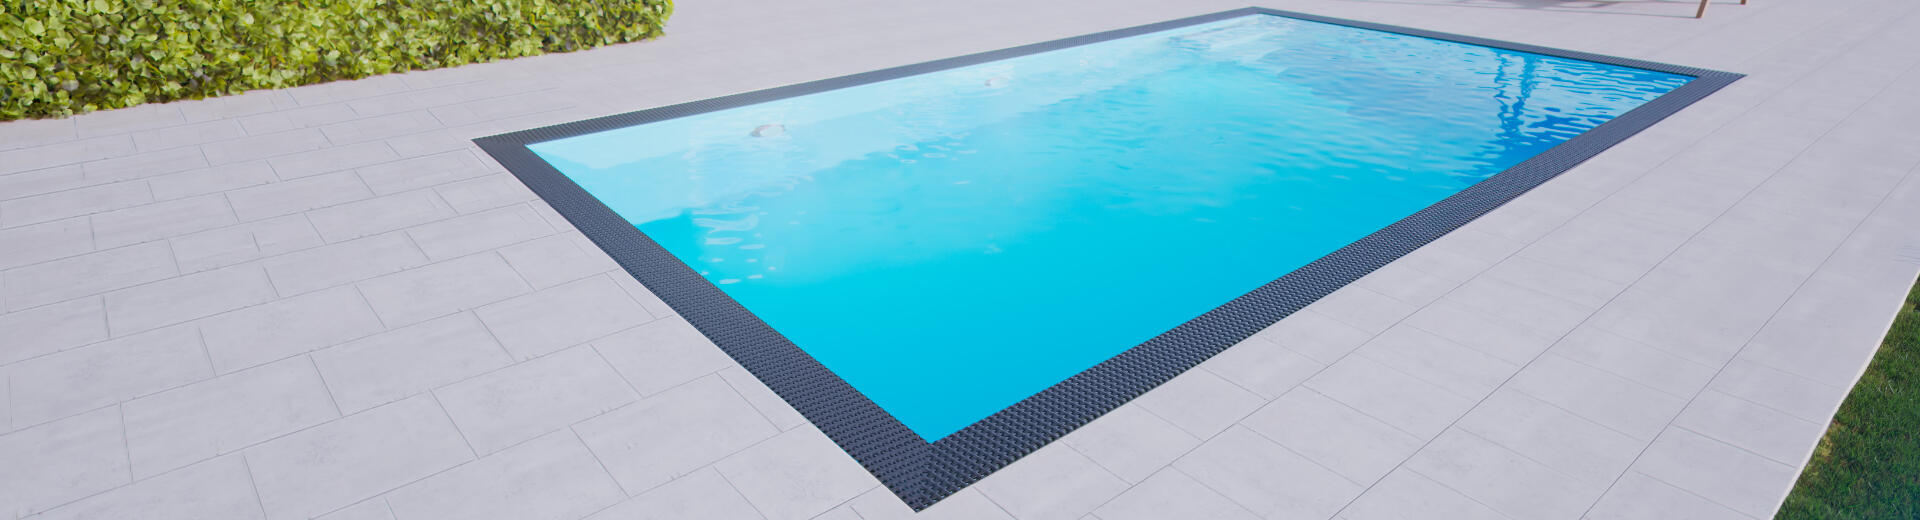 Přelivový bazén 3x6m